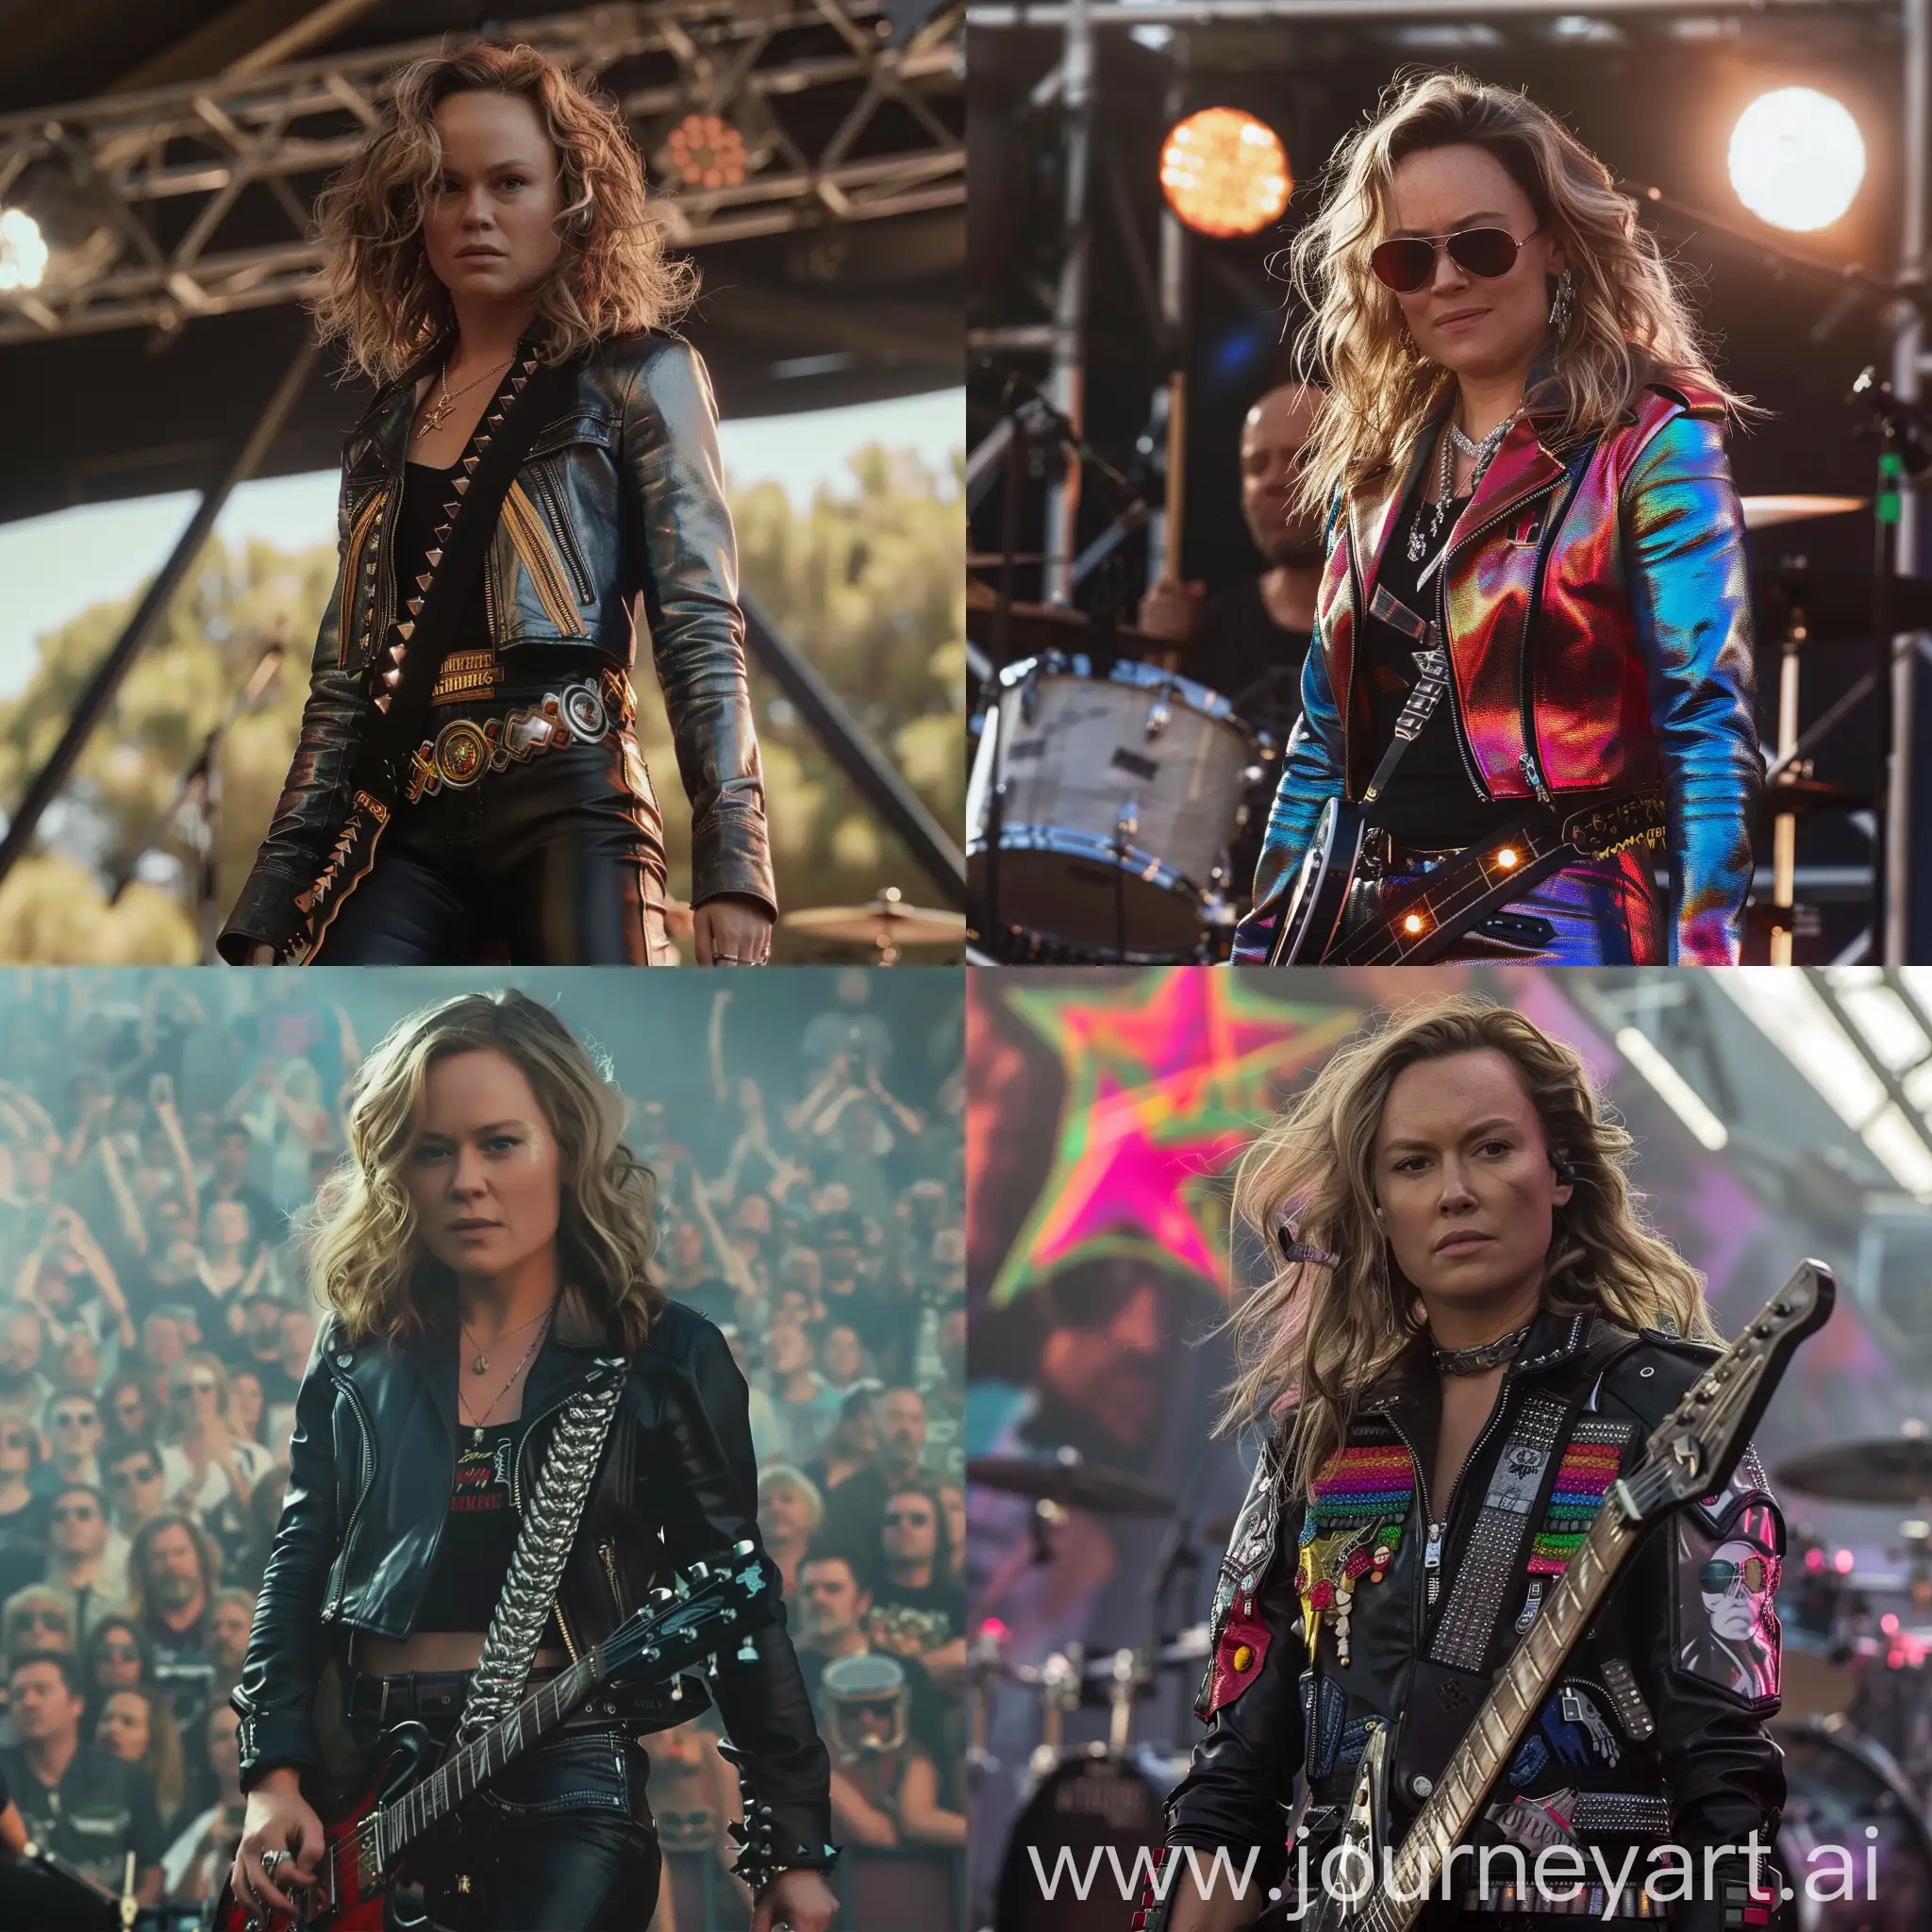 Brie-Larson-Rocker-Look-at-Metallica-Concert